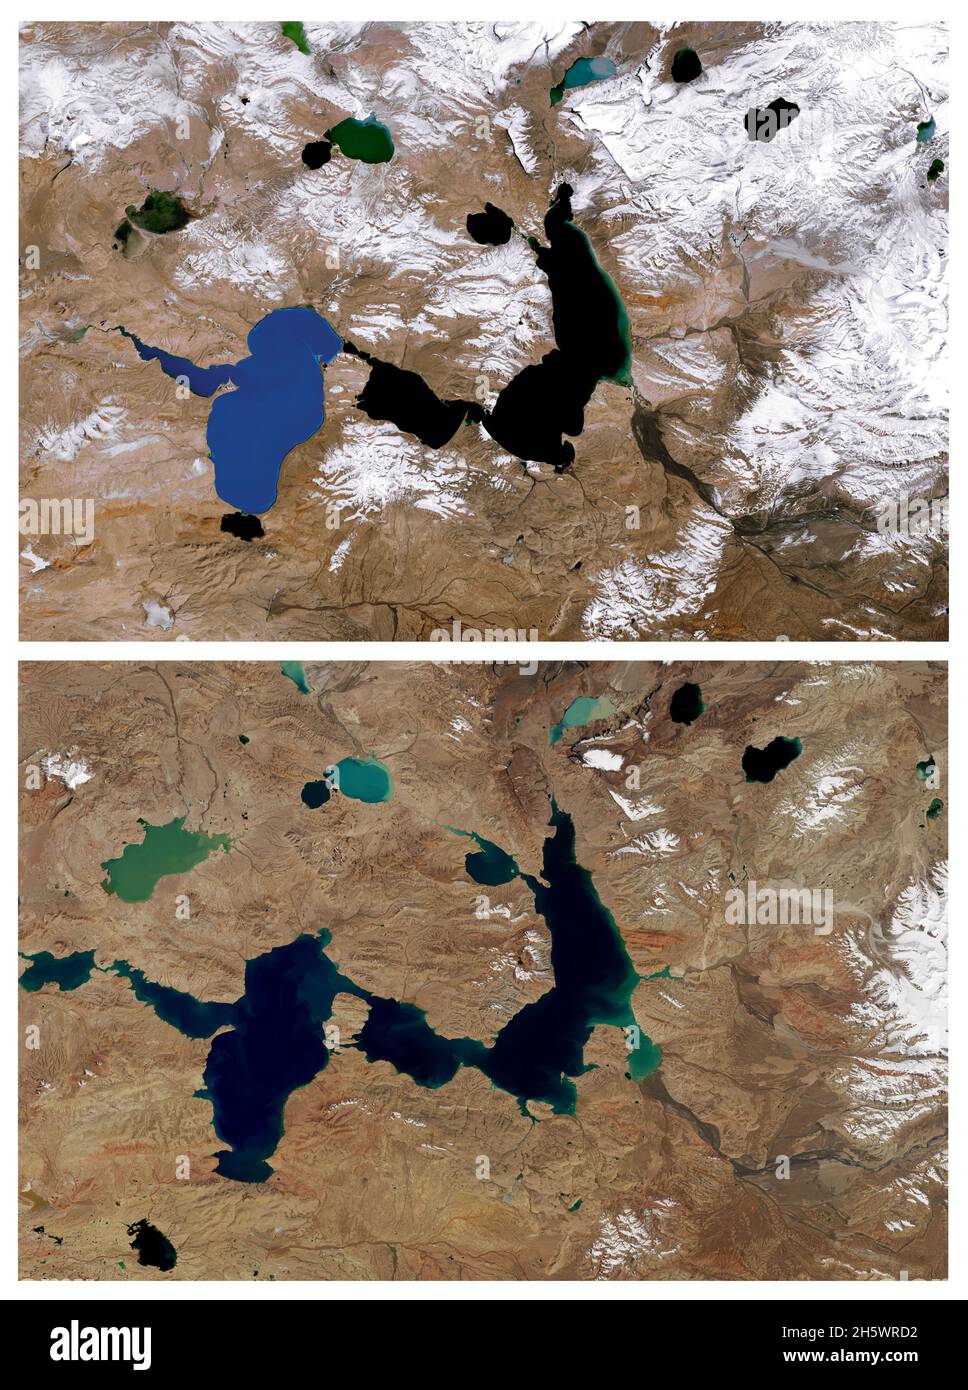 Klimawandel: Schrumpfende Gletscher und wachsende Seen. Diese Bilder von Seen westlich des Tanggula-Gebirges, einem kleinen Bereich im zentralen Teil des tibetischen Hochplateaus, bieten einen Blick auf Veränderungen, die zum Teil durch den Rückzug der Gletscher verursacht wurden. Das erste Bild wurde im Oktober 1987 aufgenommen, das zweite Bild zeigt das gleiche Gebiet im Oktober 2021. Die beiden größten Seen - Chibzhang Co und Dorsoidong Co, sind größer geworden, da die Berggletscher geschrumpft sind. Die Vorderkante der Gletscher hat sich deutlich zurückgezogen. Eine hochauflösende und verbesserte Zusammenstellung von ursprünglichen Landsat5- und Landsat8-Bildern. Kredit NASA Stockfoto